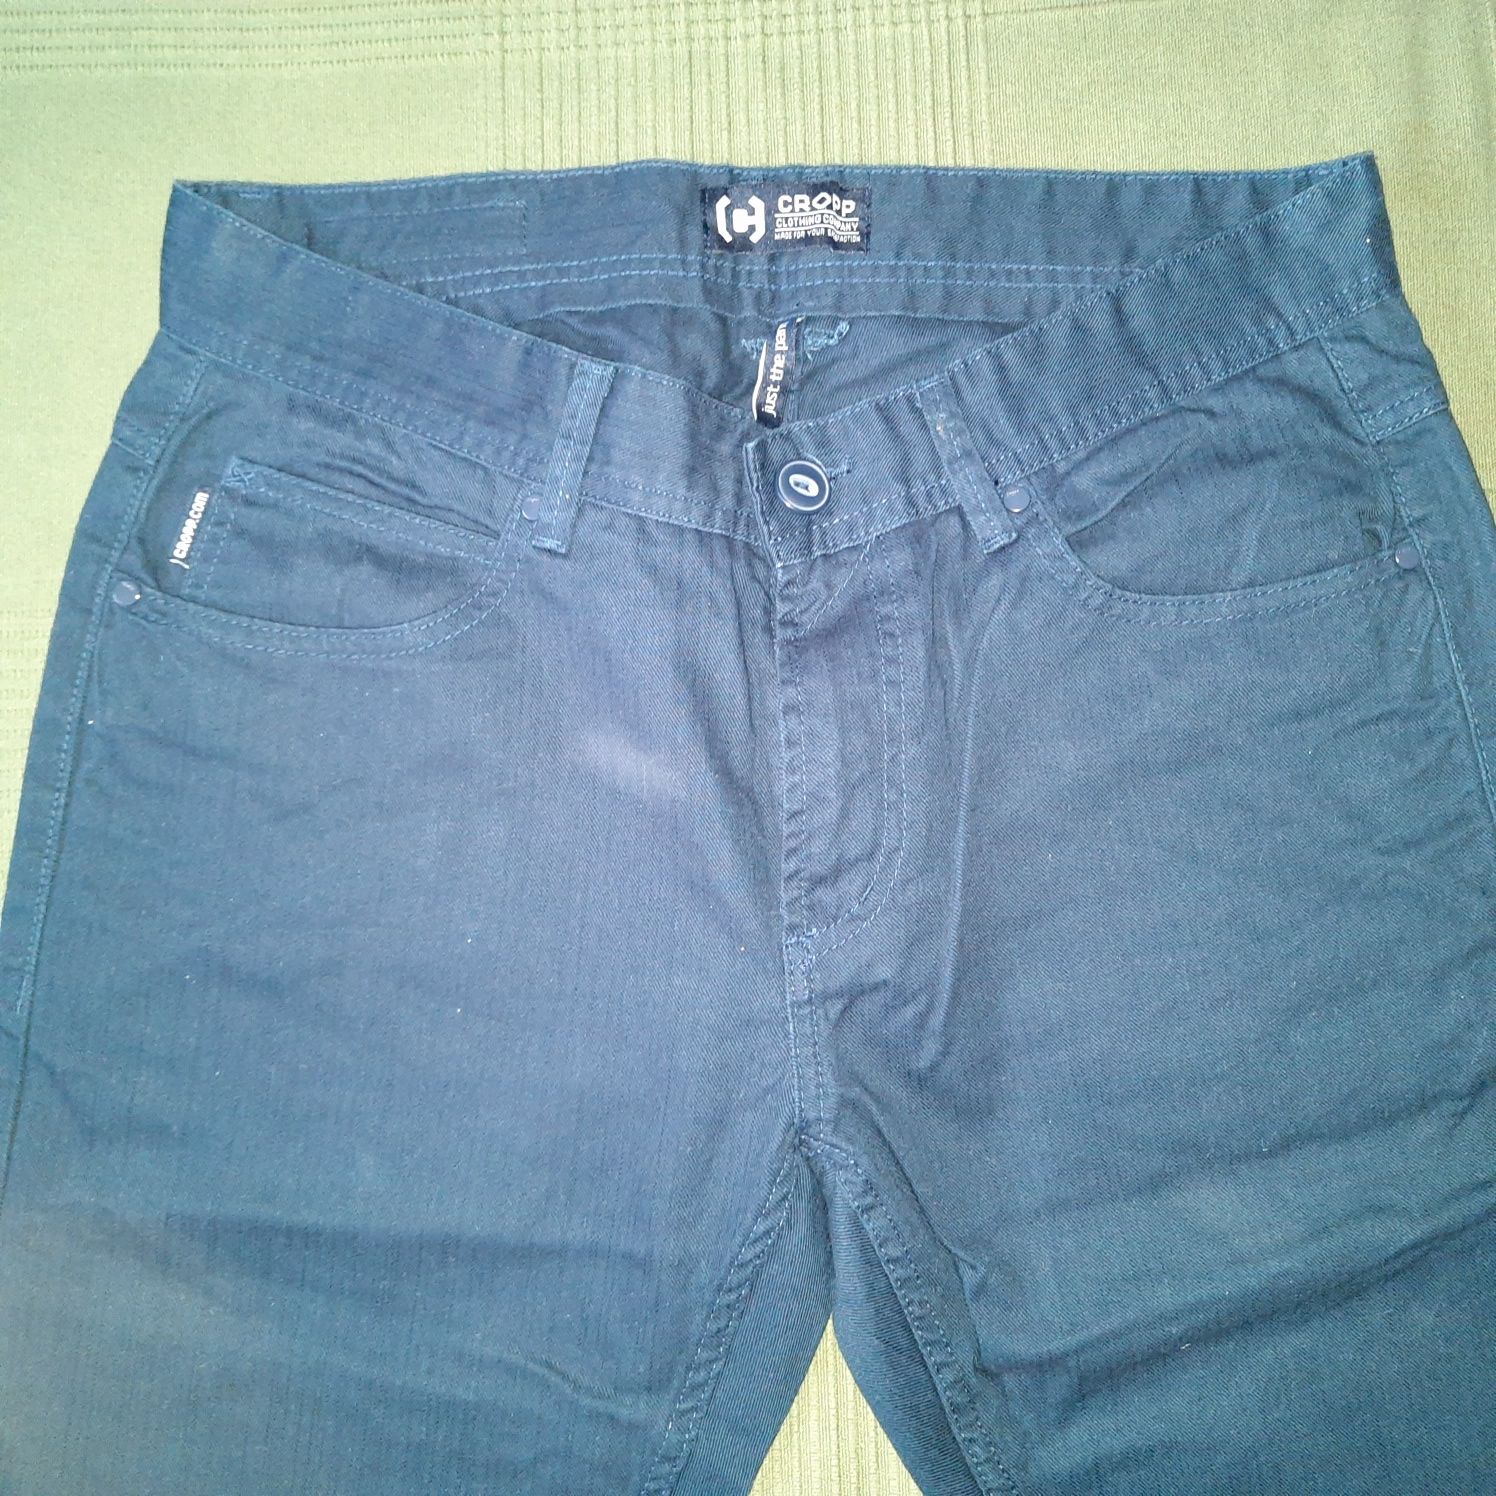 Spodnie męskie dzinsy jeansy granatowe r 32 cropp